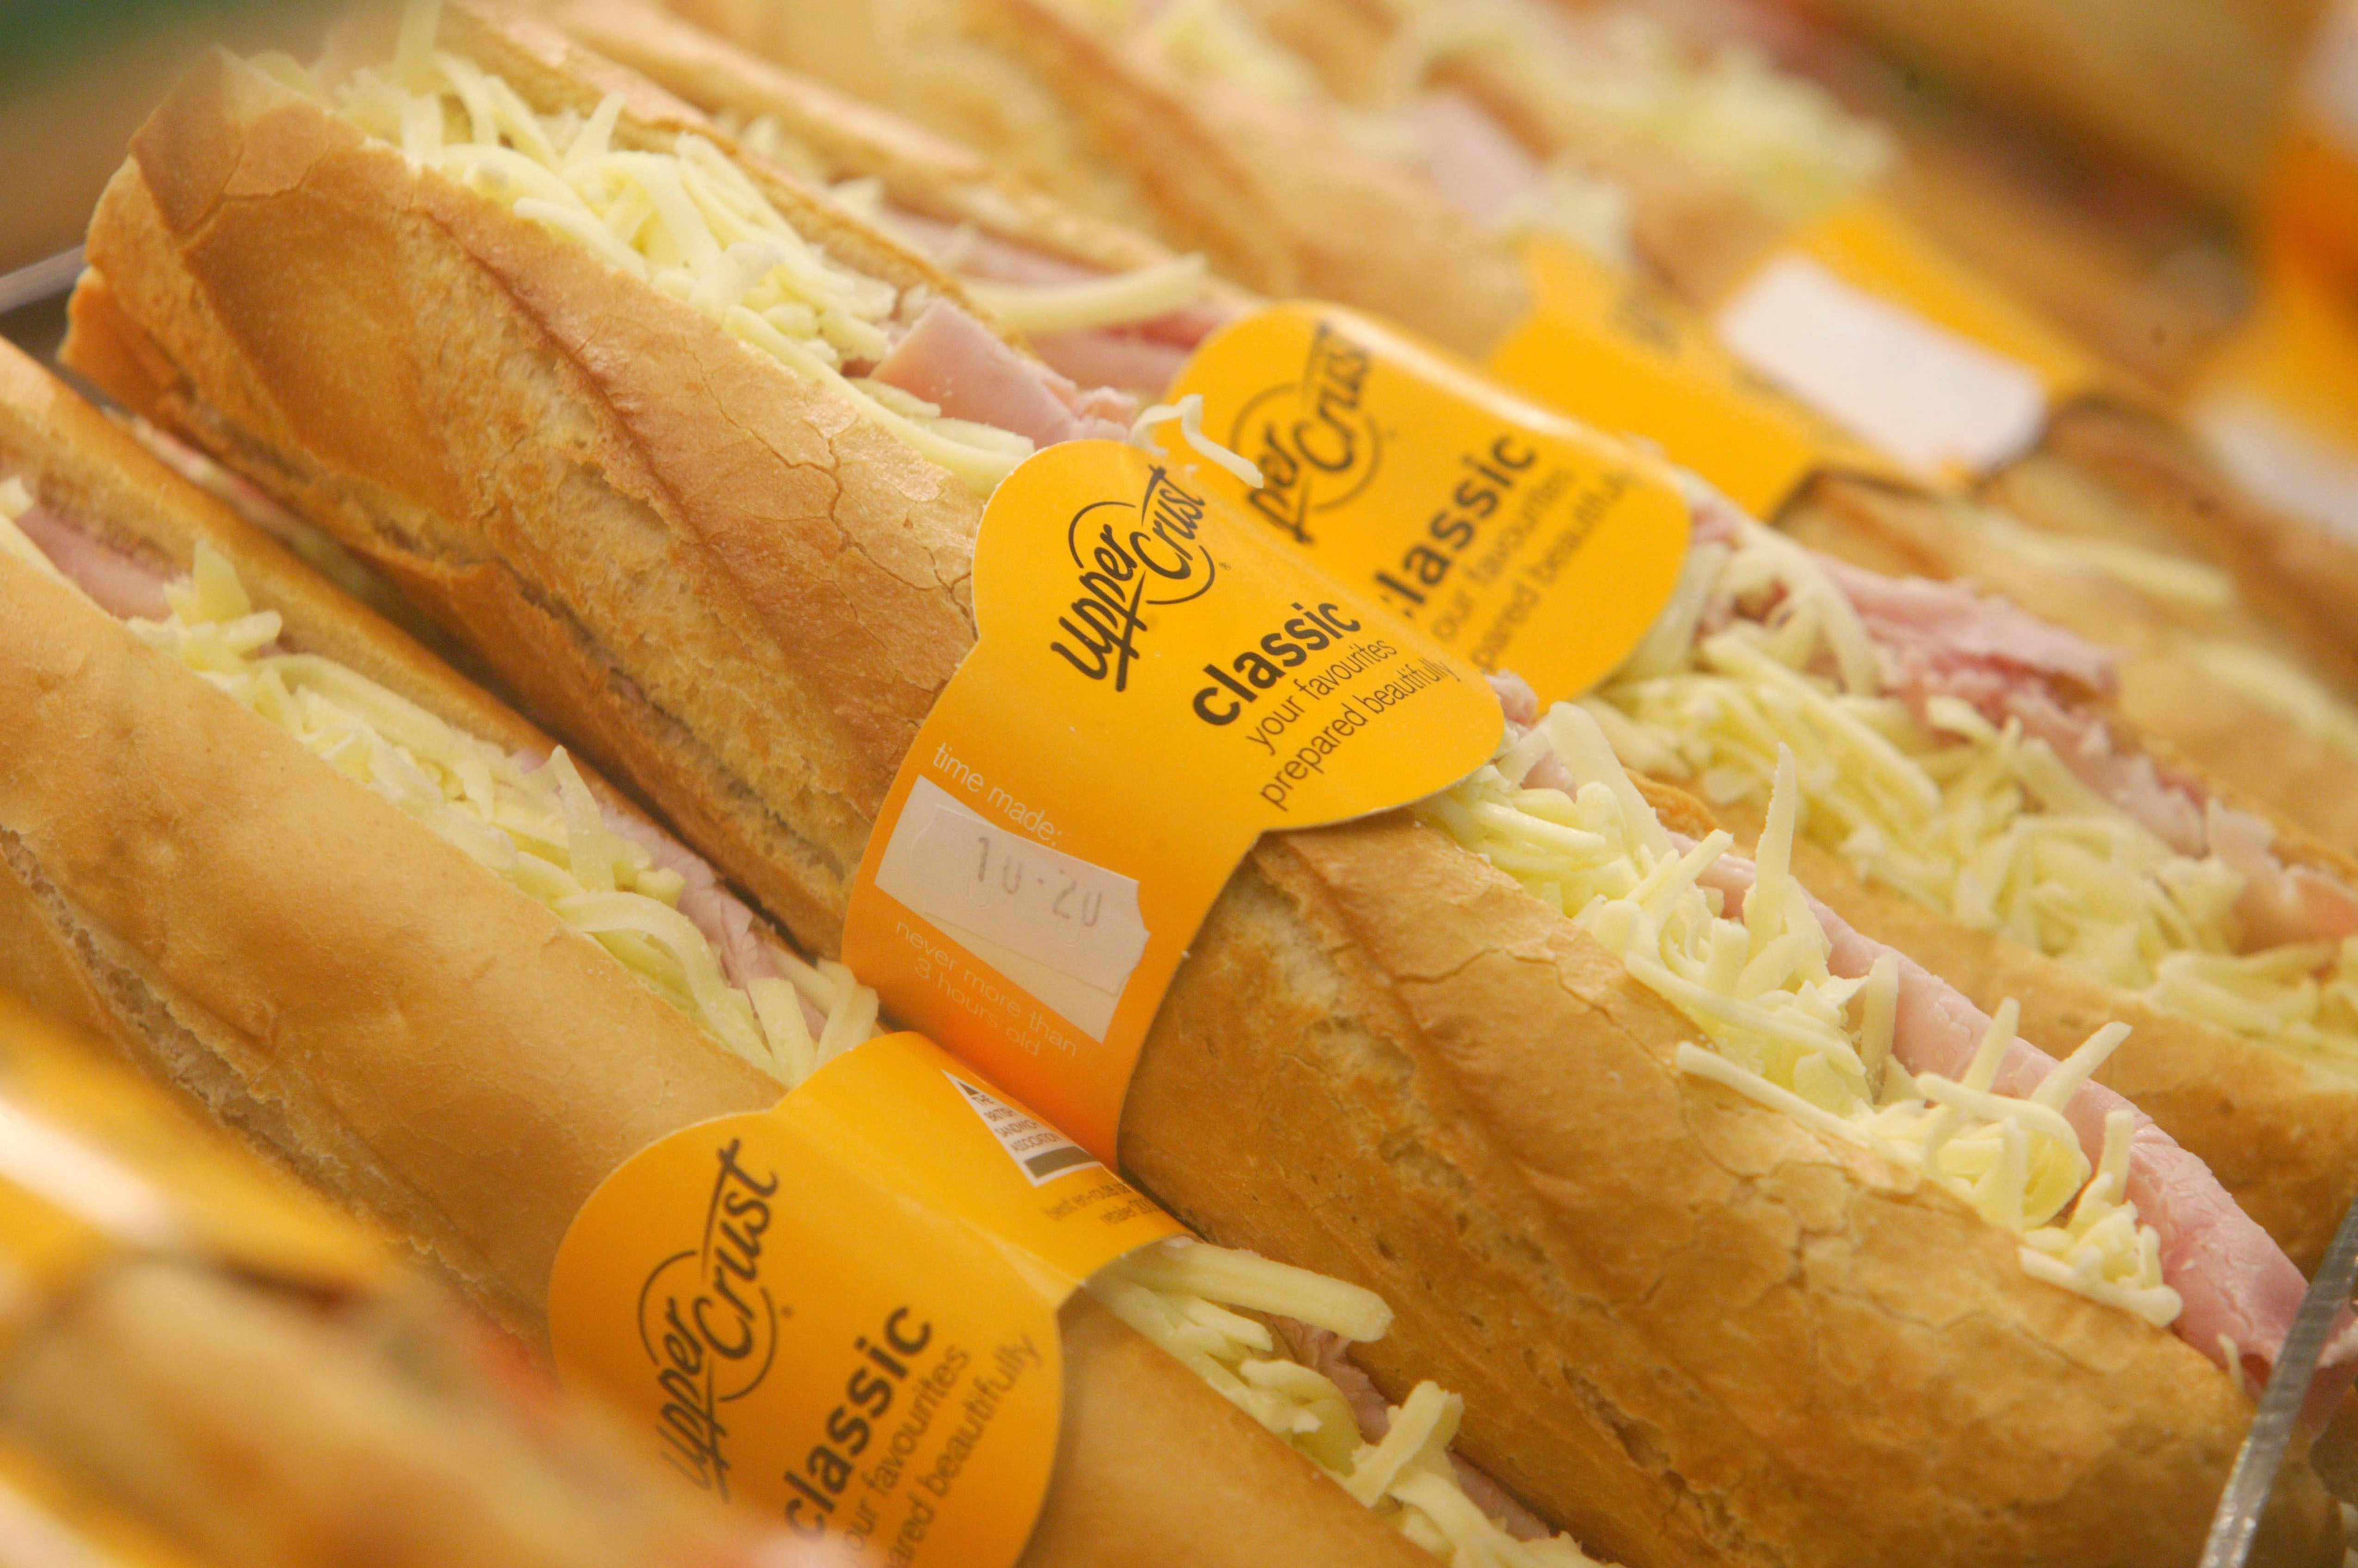 Der Sandwich-Einzelhändler hat einen Jahresumsatz von rund 100 Millionen Pfund